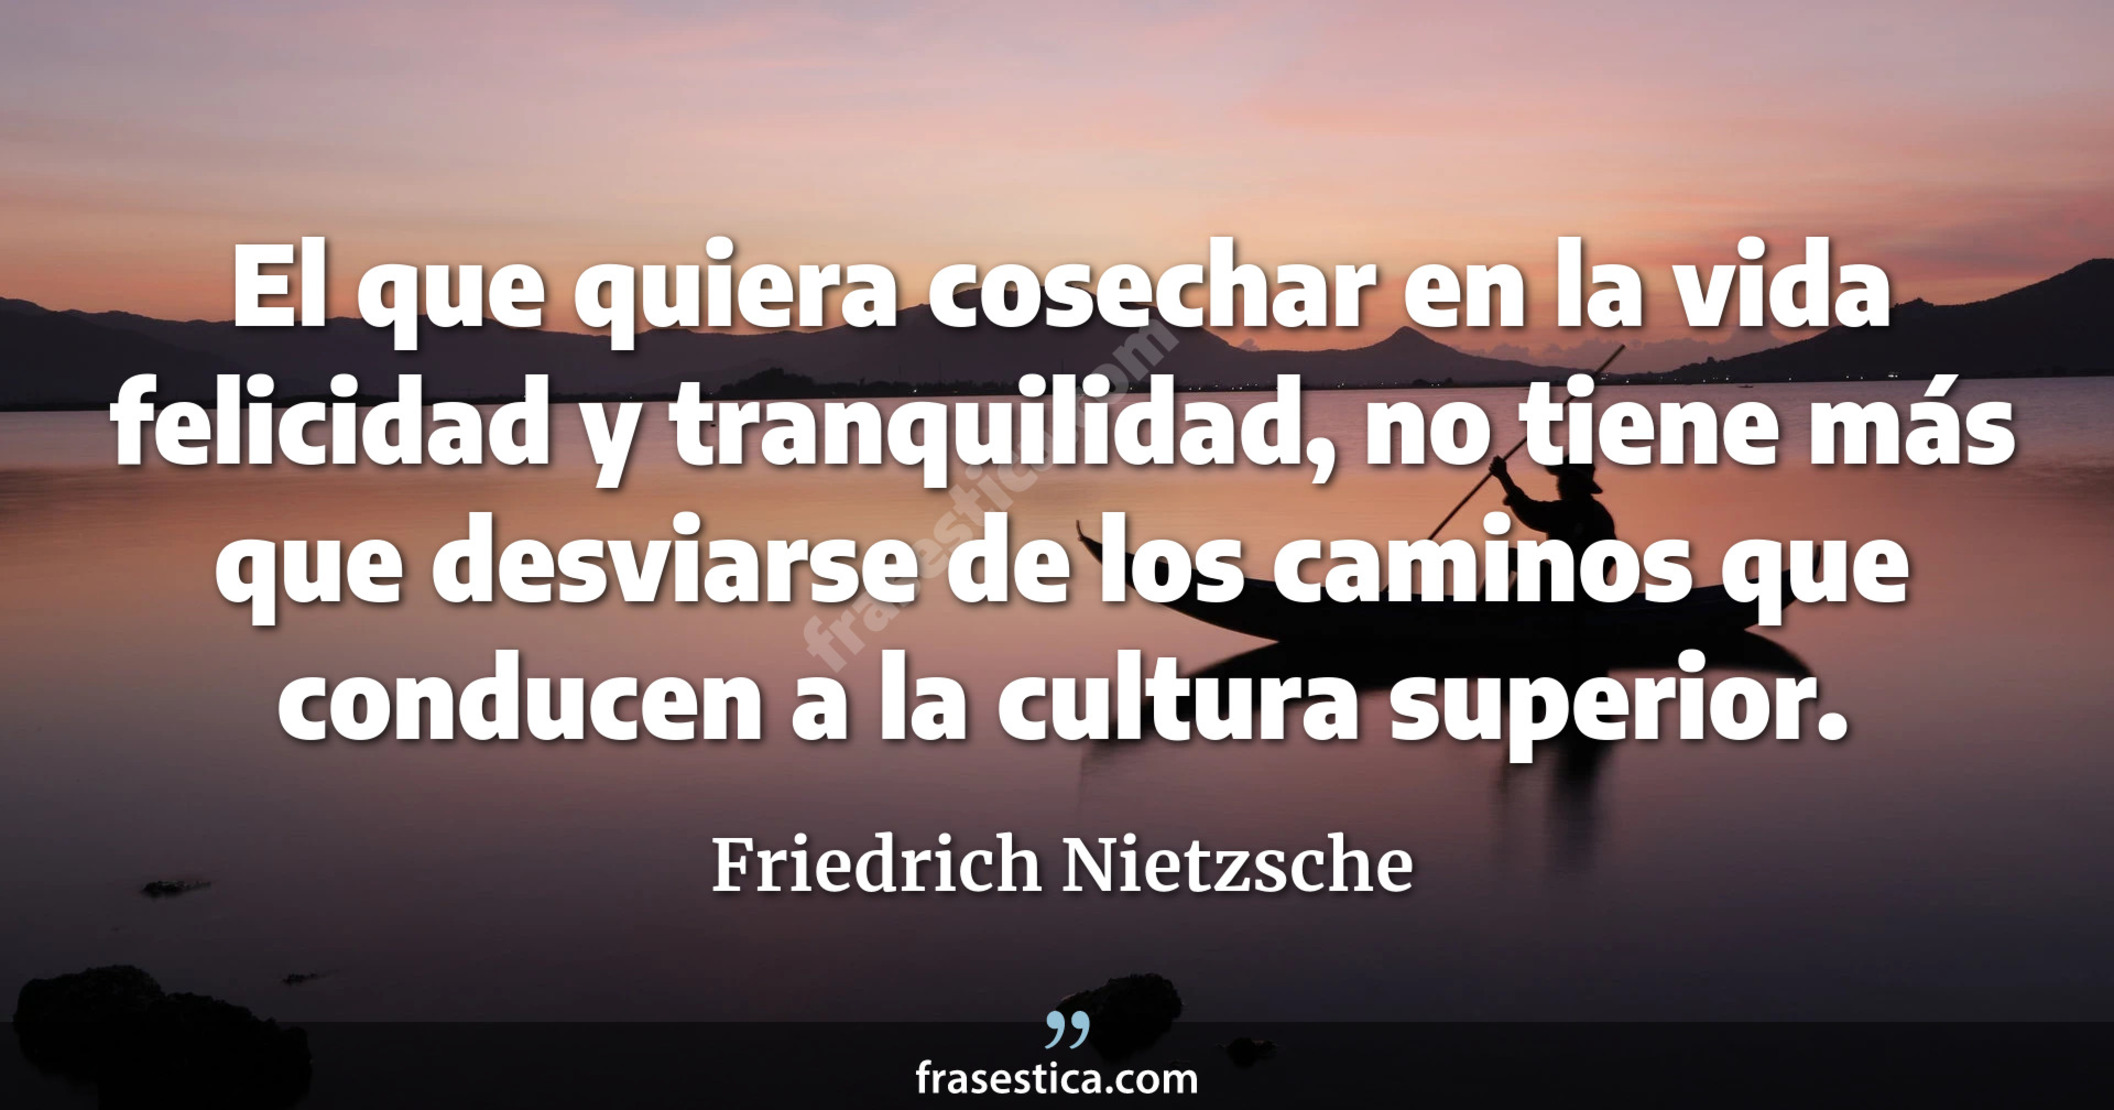 El que quiera cosechar en la vida felicidad y tranquilidad, no tiene más que desviarse de los caminos que conducen a la cultura superior. - Friedrich Nietzsche